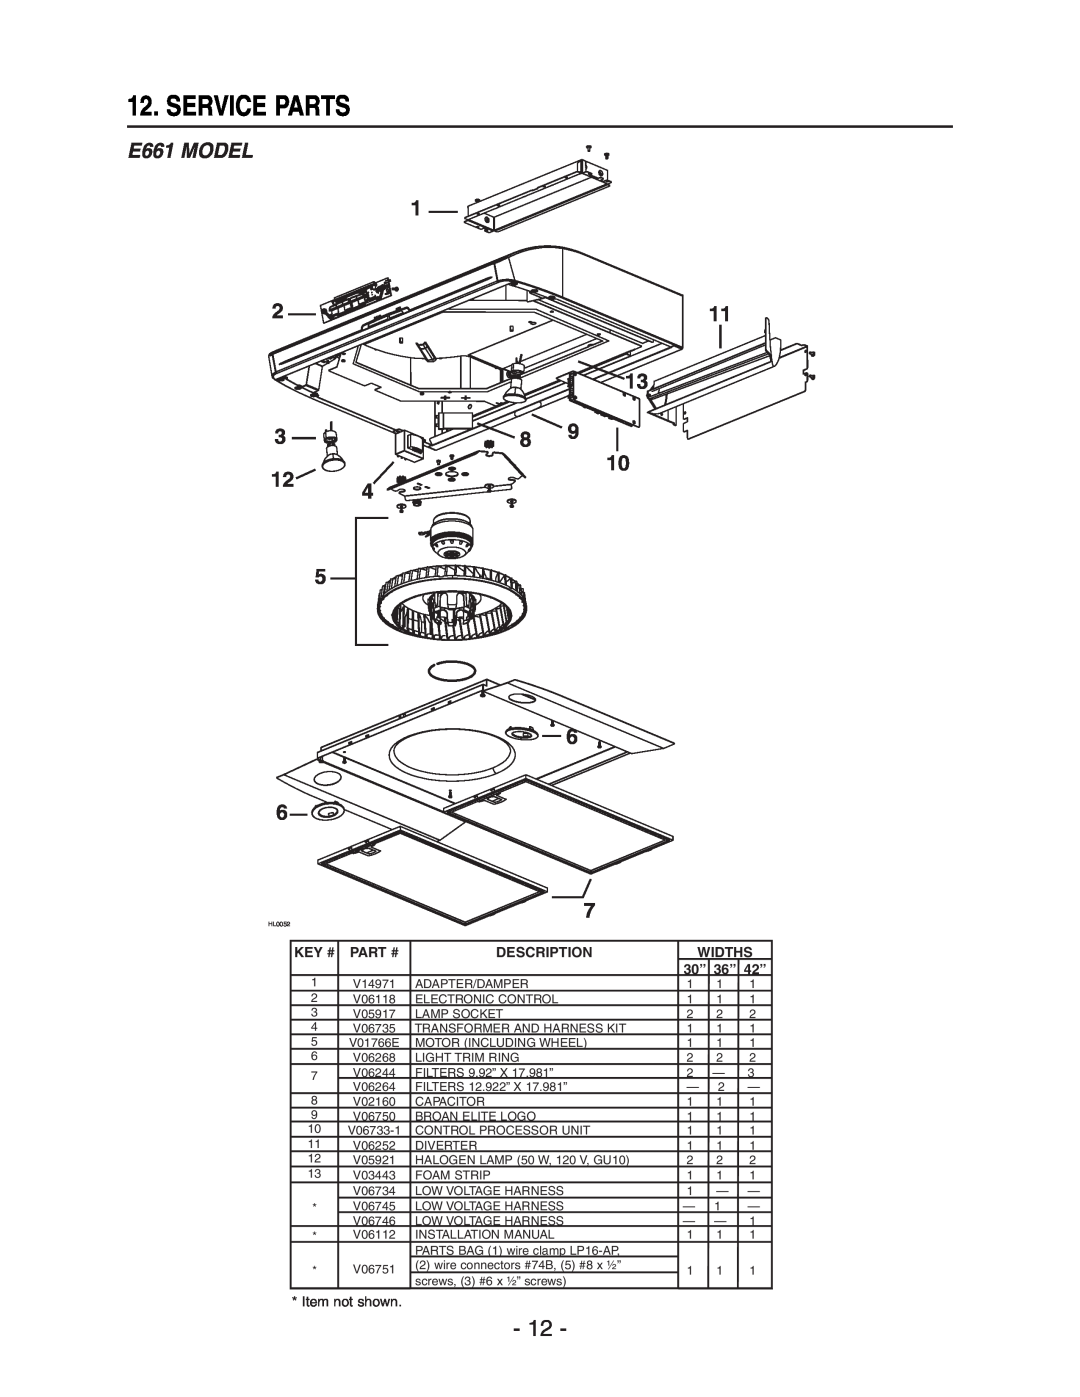 Broan manual Service Parts, E661 MODEL, 2 3 12, Key #, Part #, Description, Widths, 30” 36” 42” 